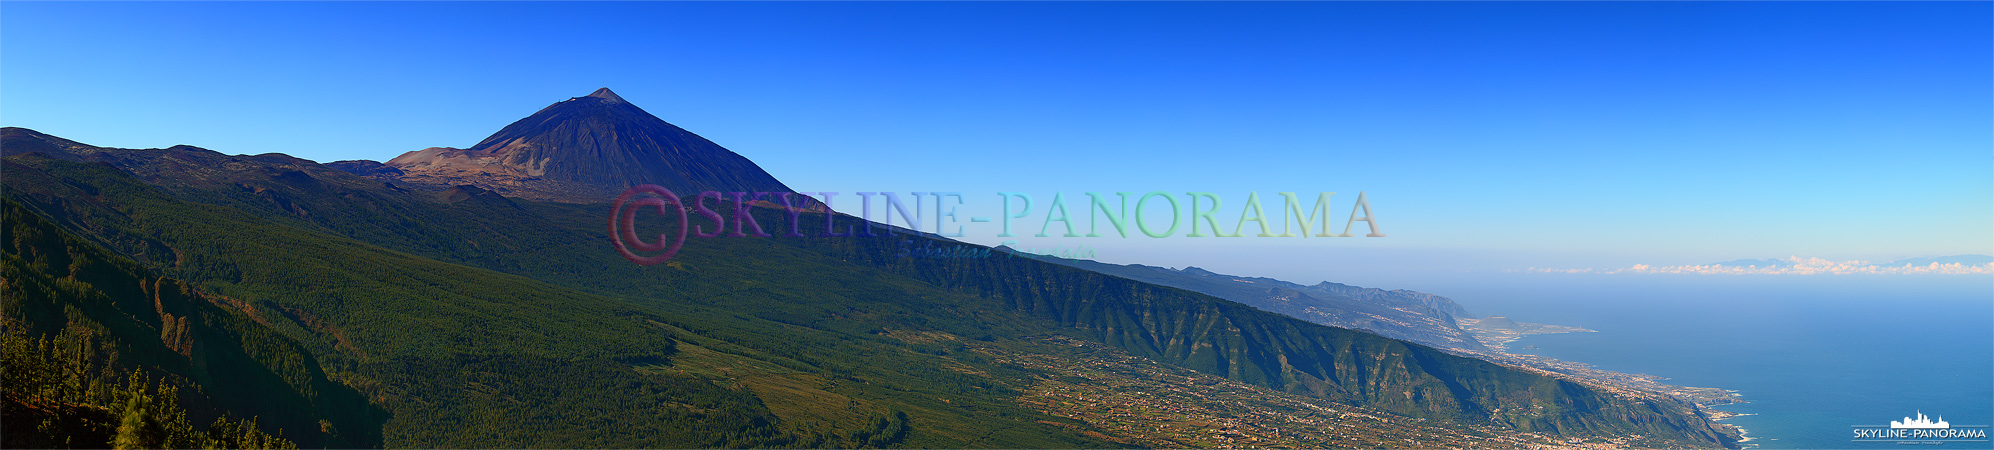 Panorama Teide – Teneriffa (p_00837)